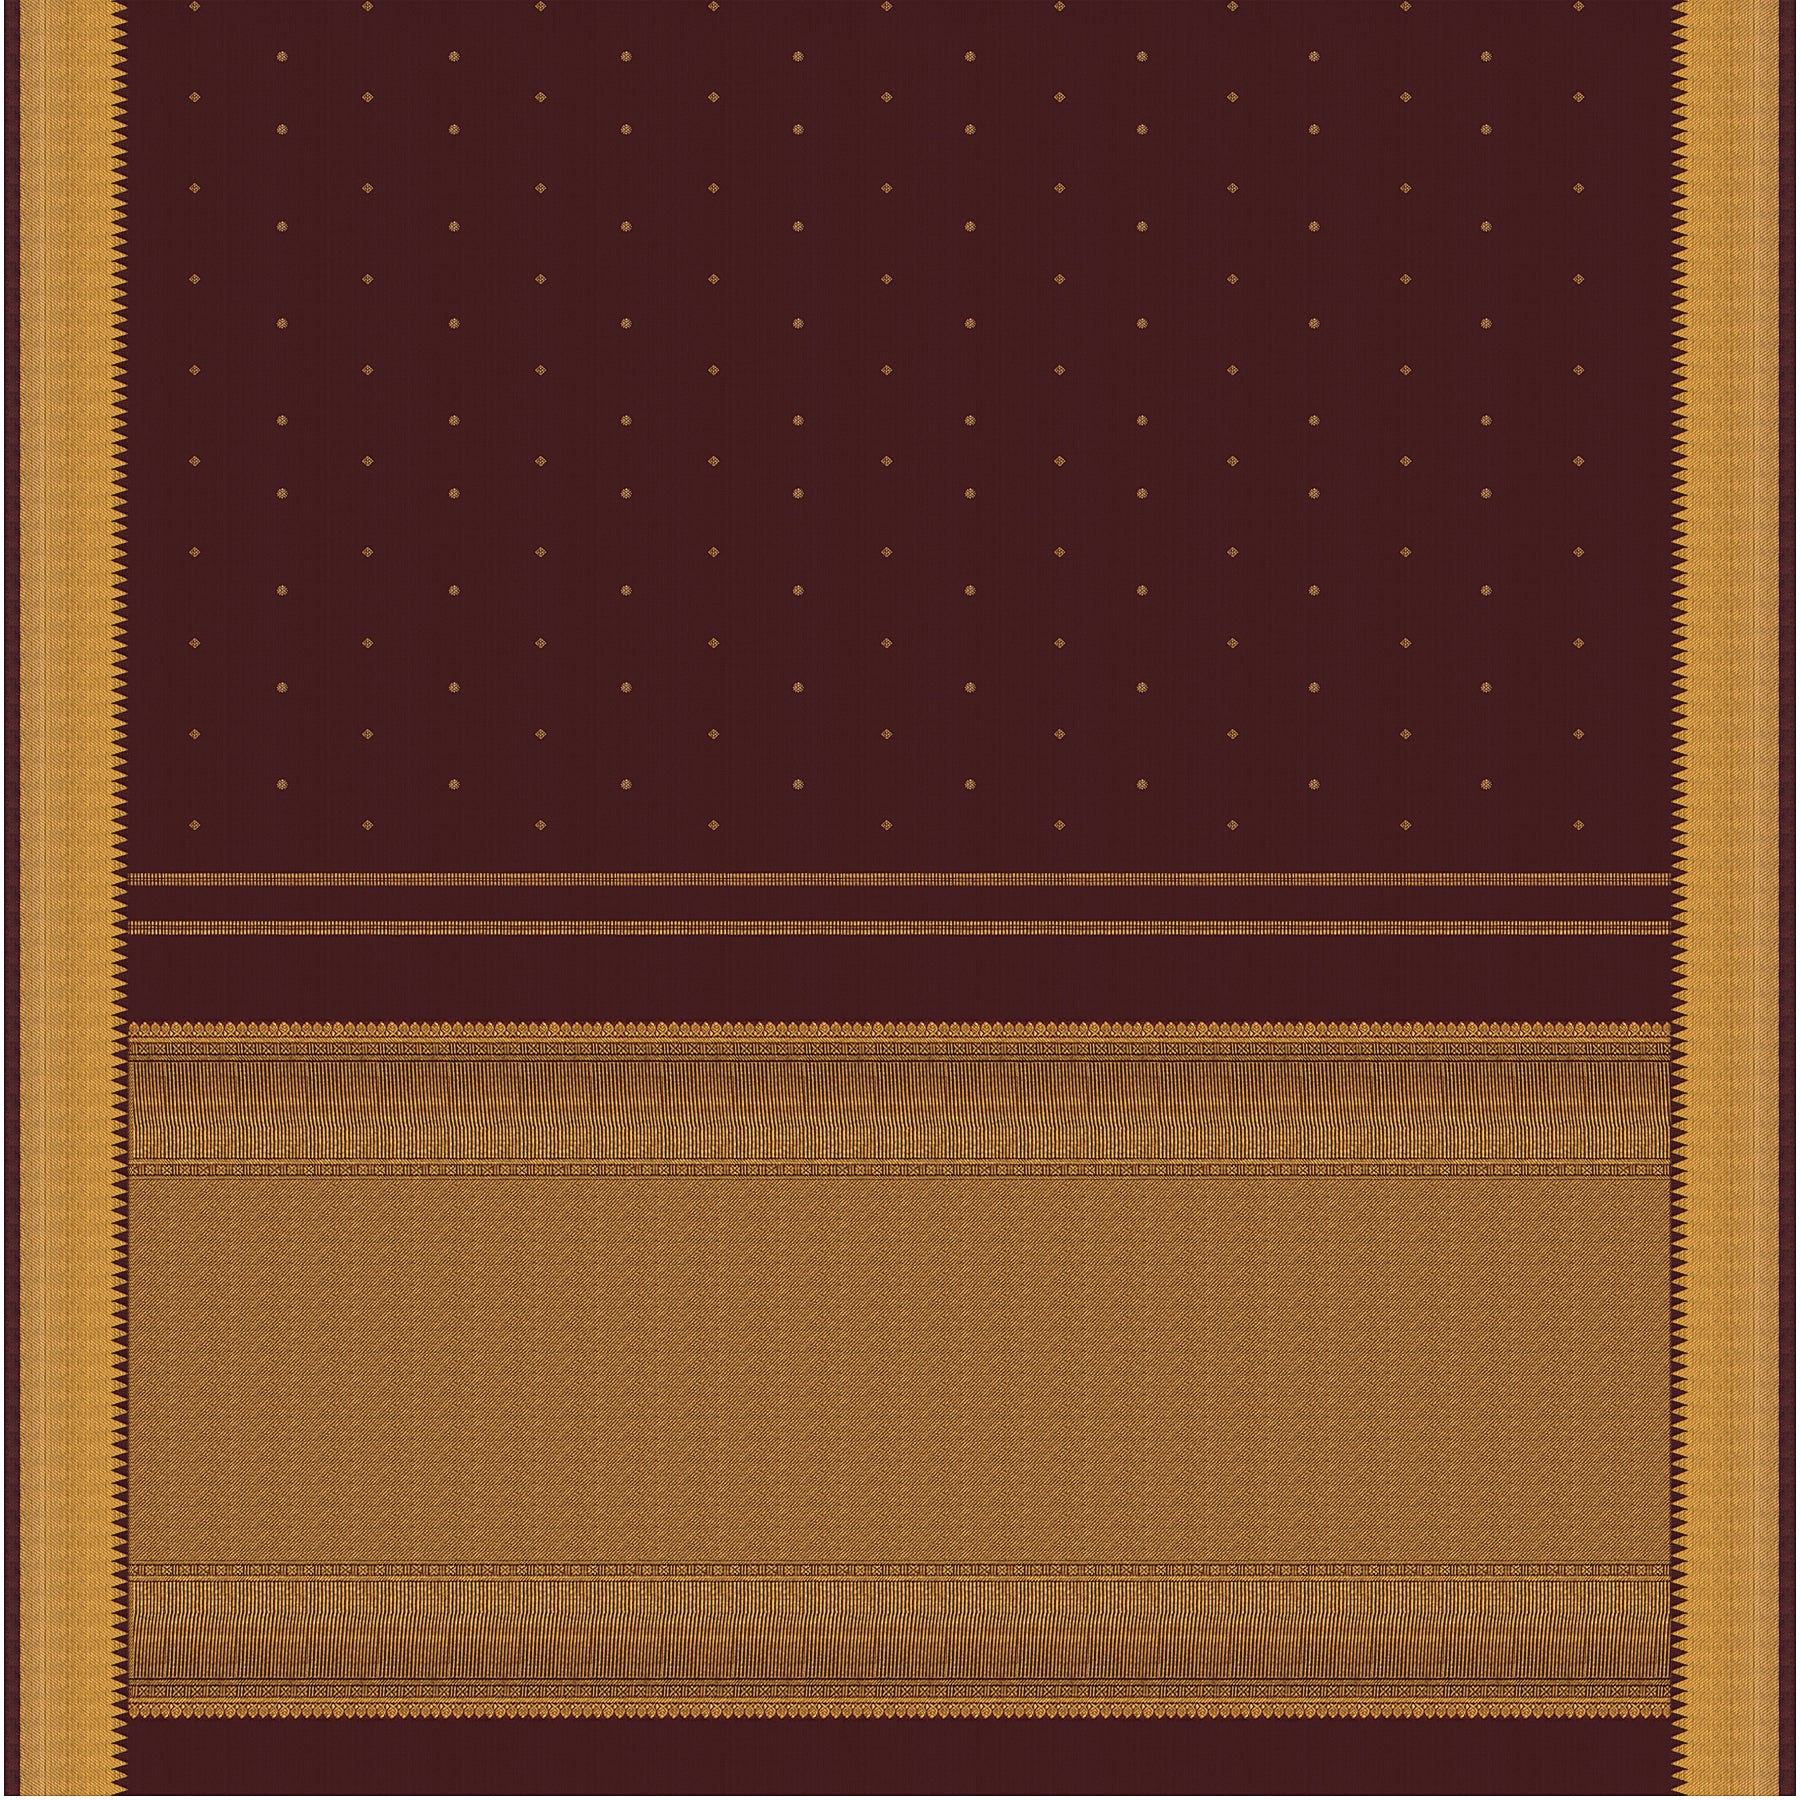 Kanakavalli Kanjivaram Silk Sari 23-611-HS001-11910 - Full View